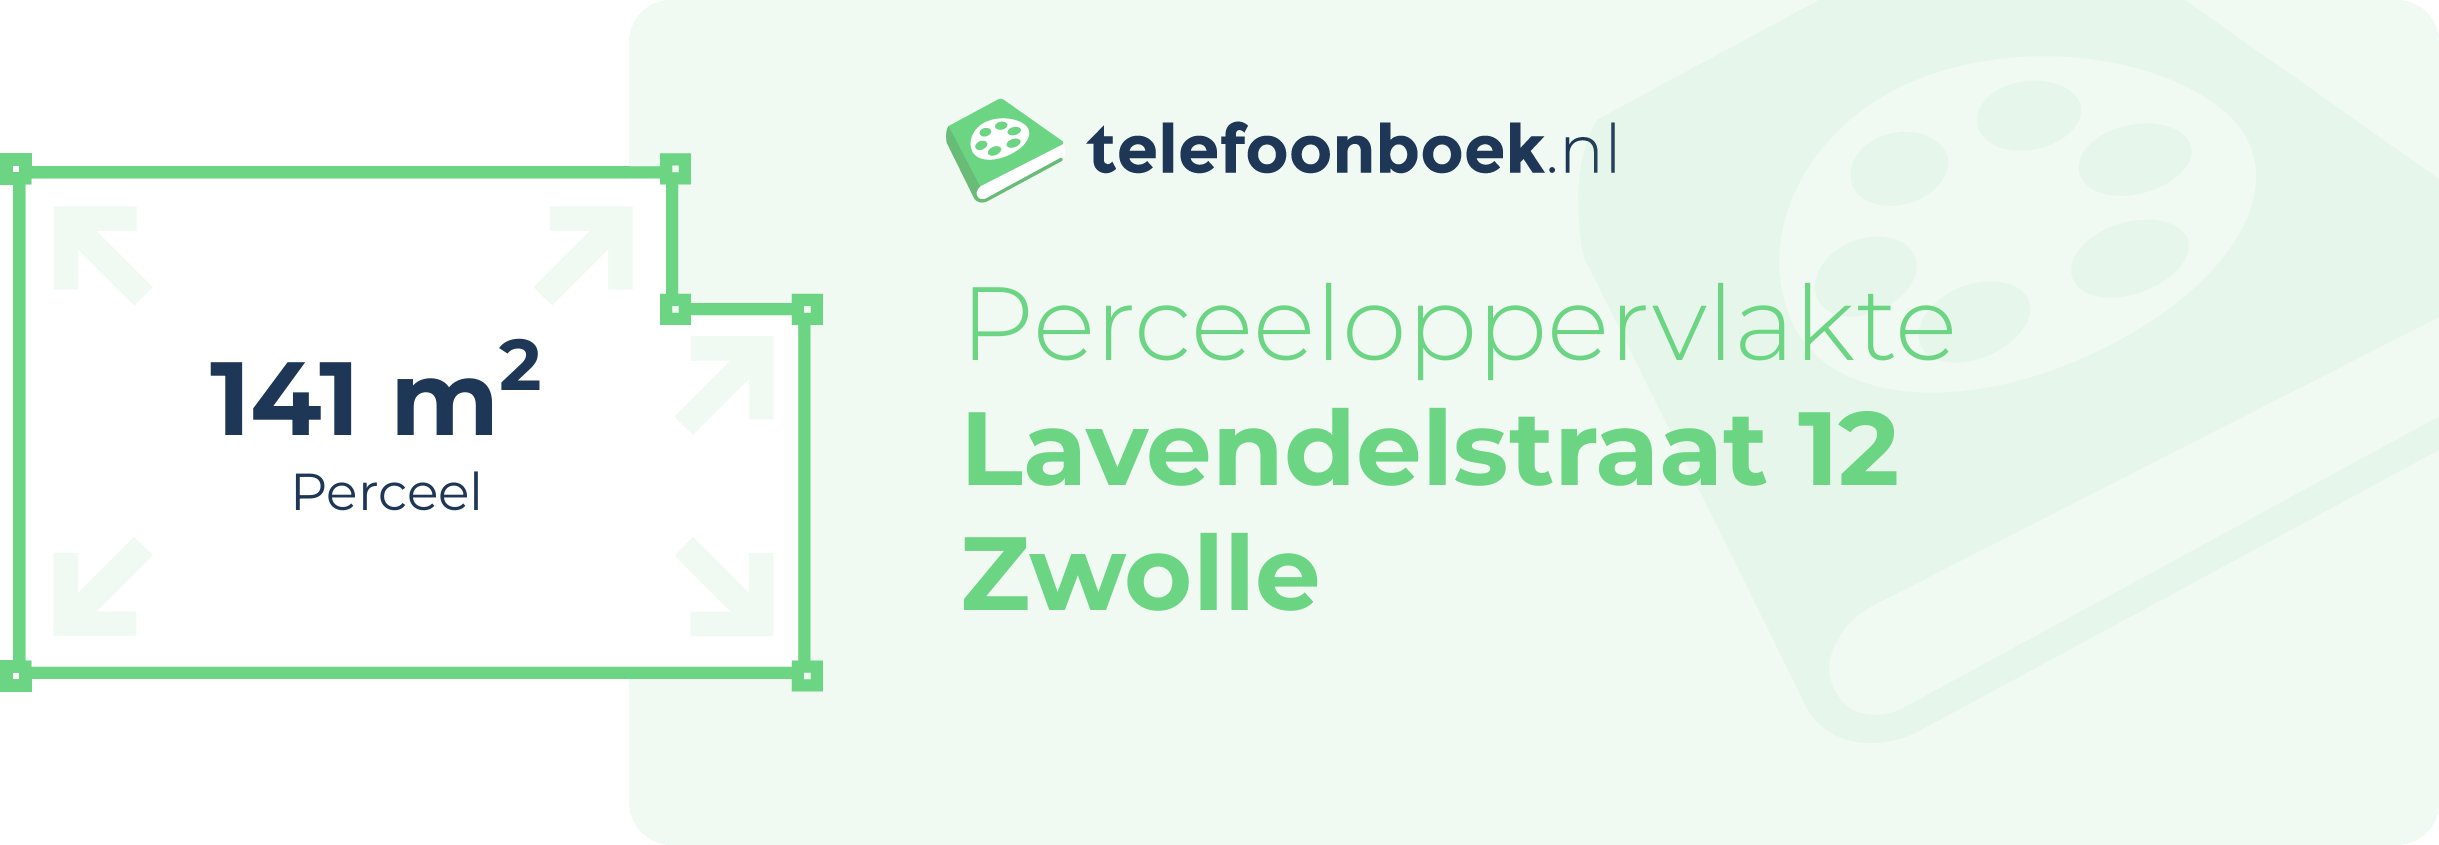 Perceeloppervlakte Lavendelstraat 12 Zwolle